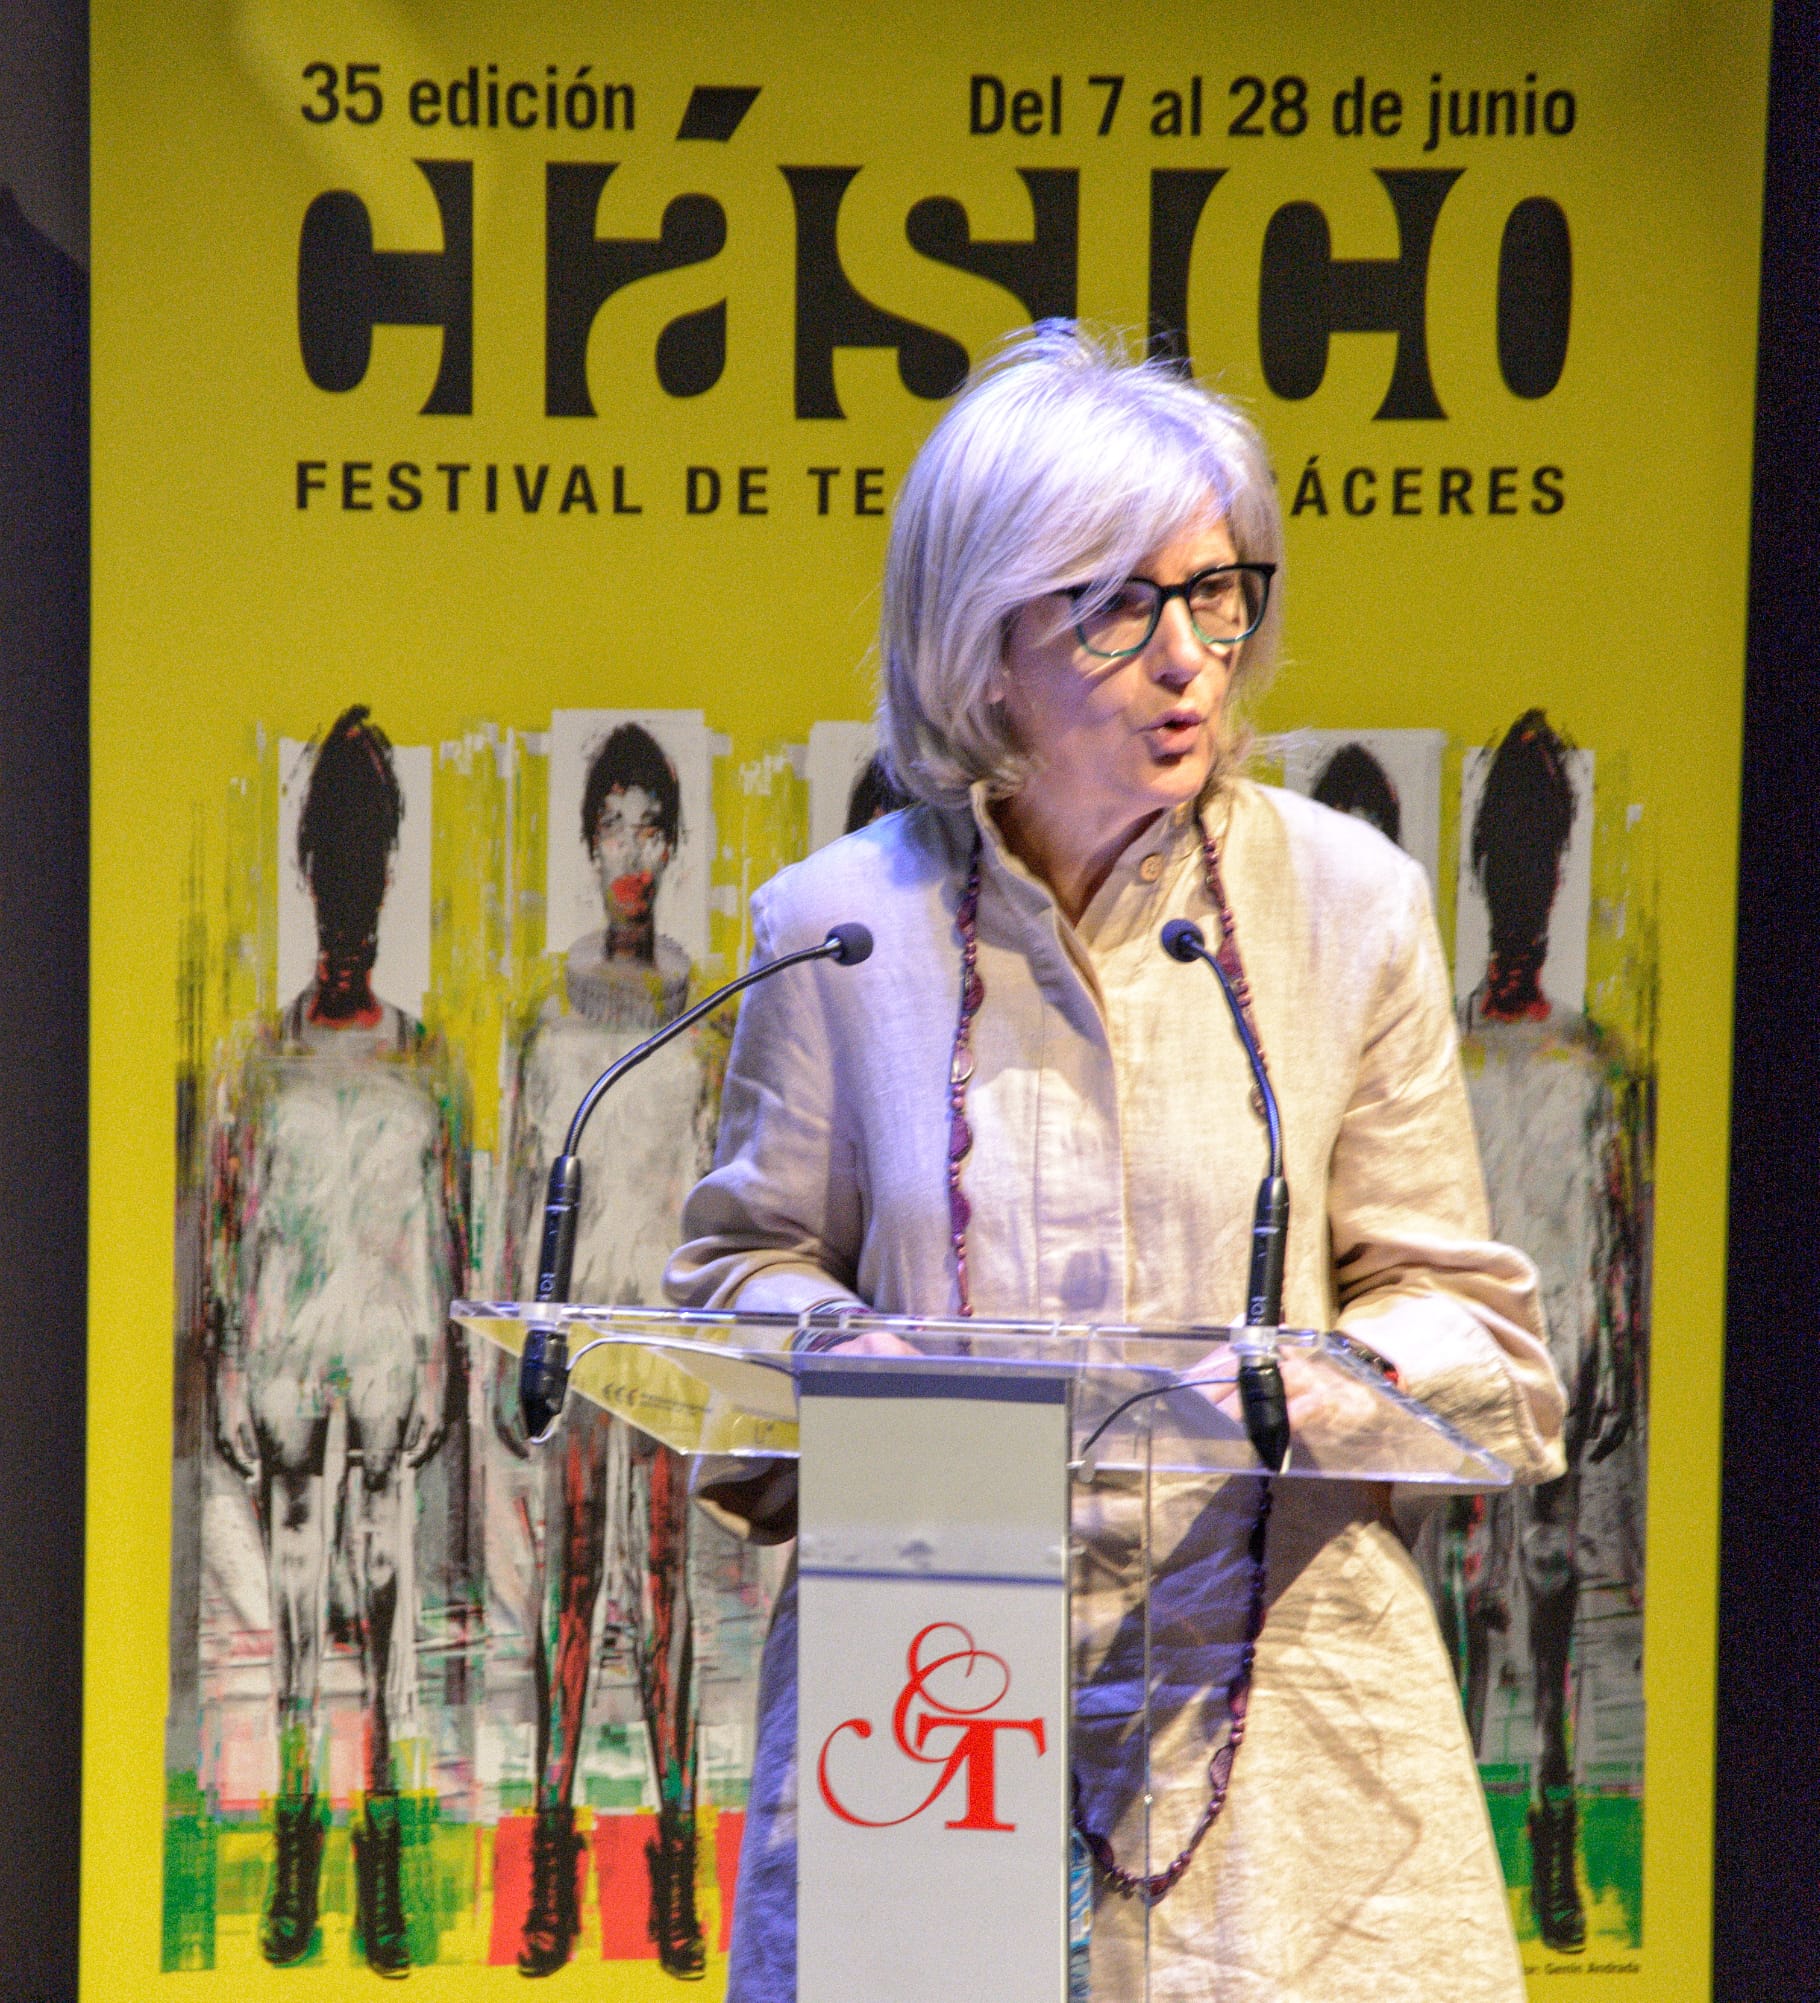 Image 13 of article La 35 edición del Festival de Teatro Clásico de Cáceres entregará por primera vez unos premios en una gala benéfica